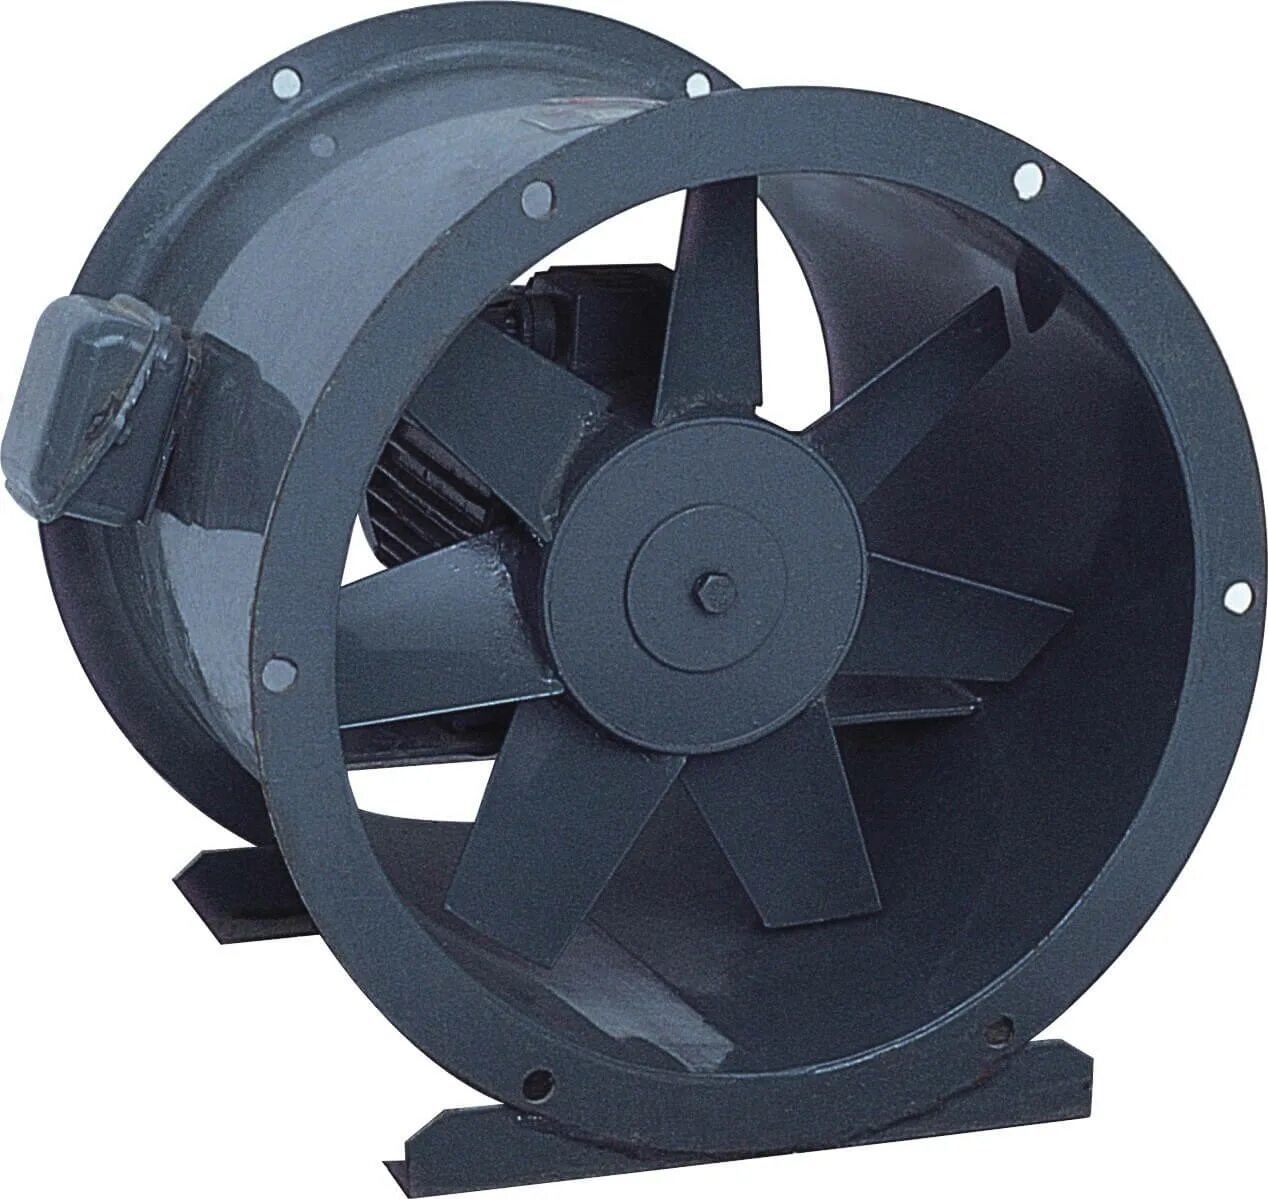 Силен вентиляторы. Axial Fan вентилятор. Вентилятор осевой промышленный BSM-500. Вентилятор осевой ПРОМВЕНТ. Вентилятор осевой д110.